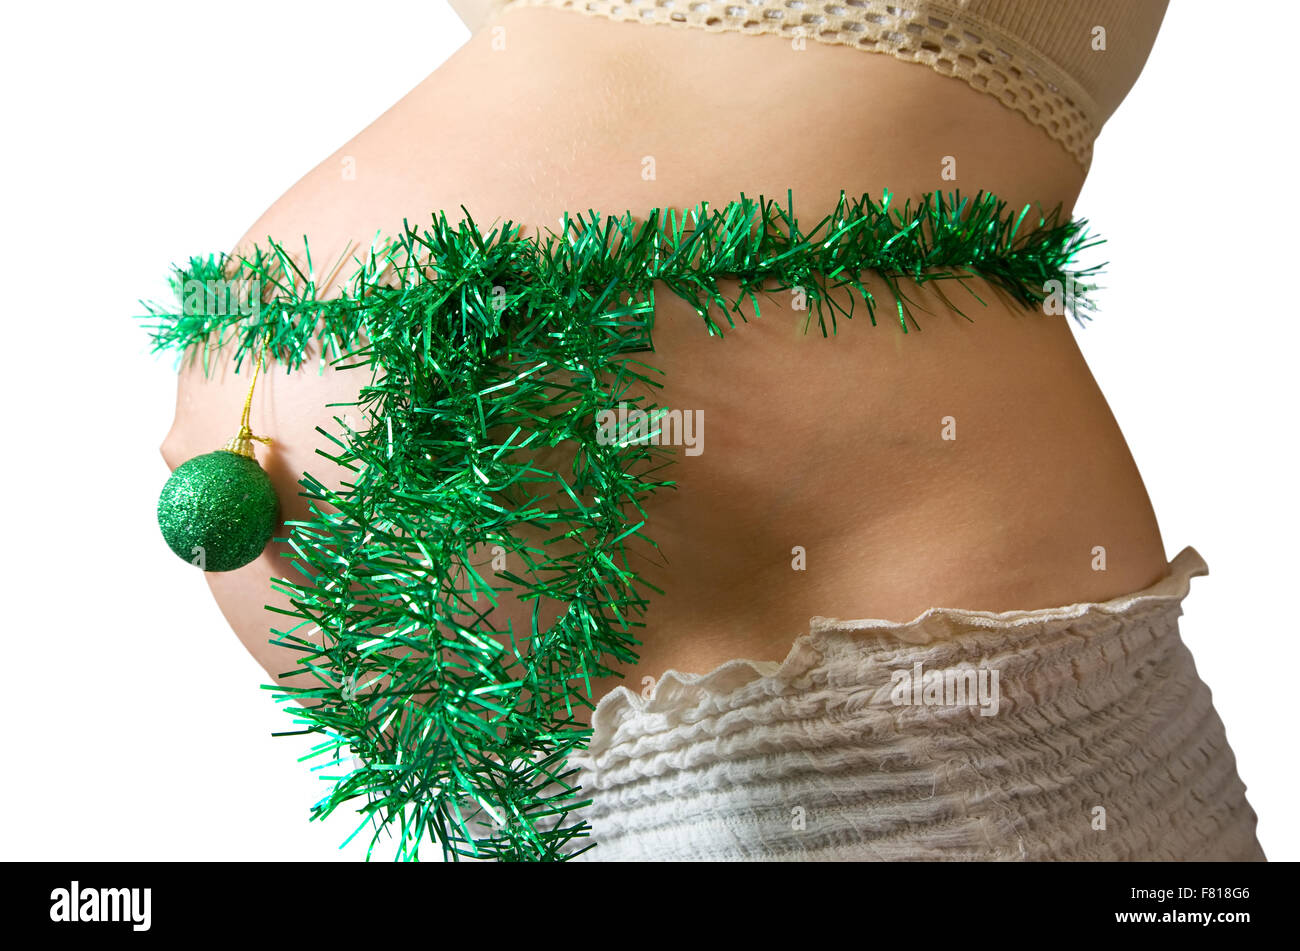 Nahaufnahme der schwangeren Frau Bauch mit Weihnachtsschmuck Stockfoto